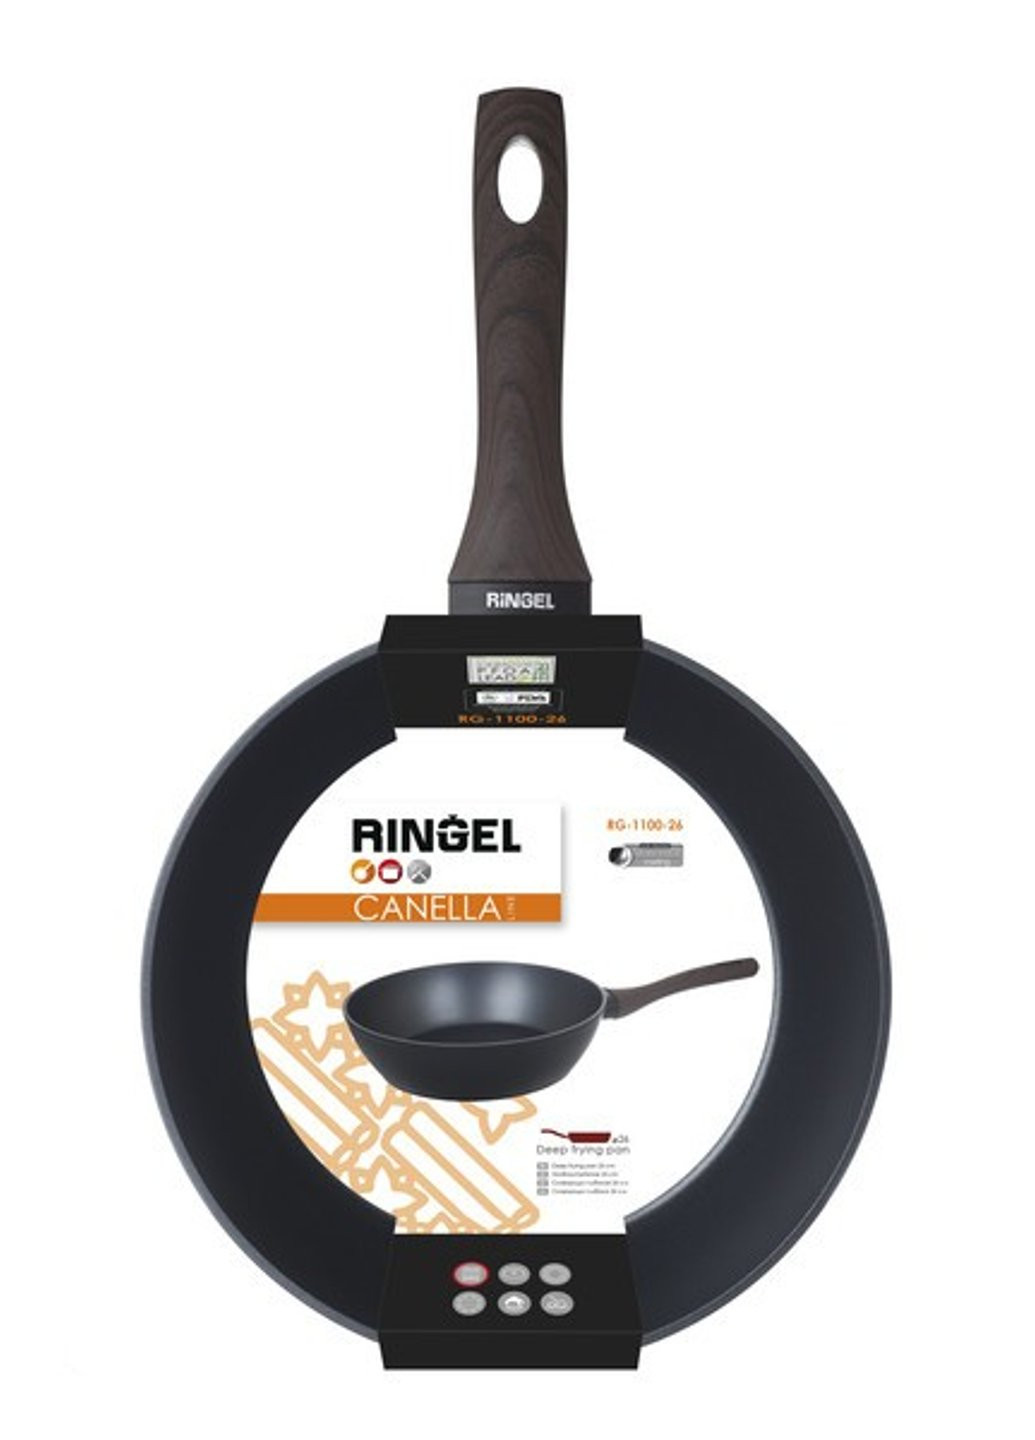 Сковорода универсальная 24 см Canella RG-1100-24 Ringel (254642040)